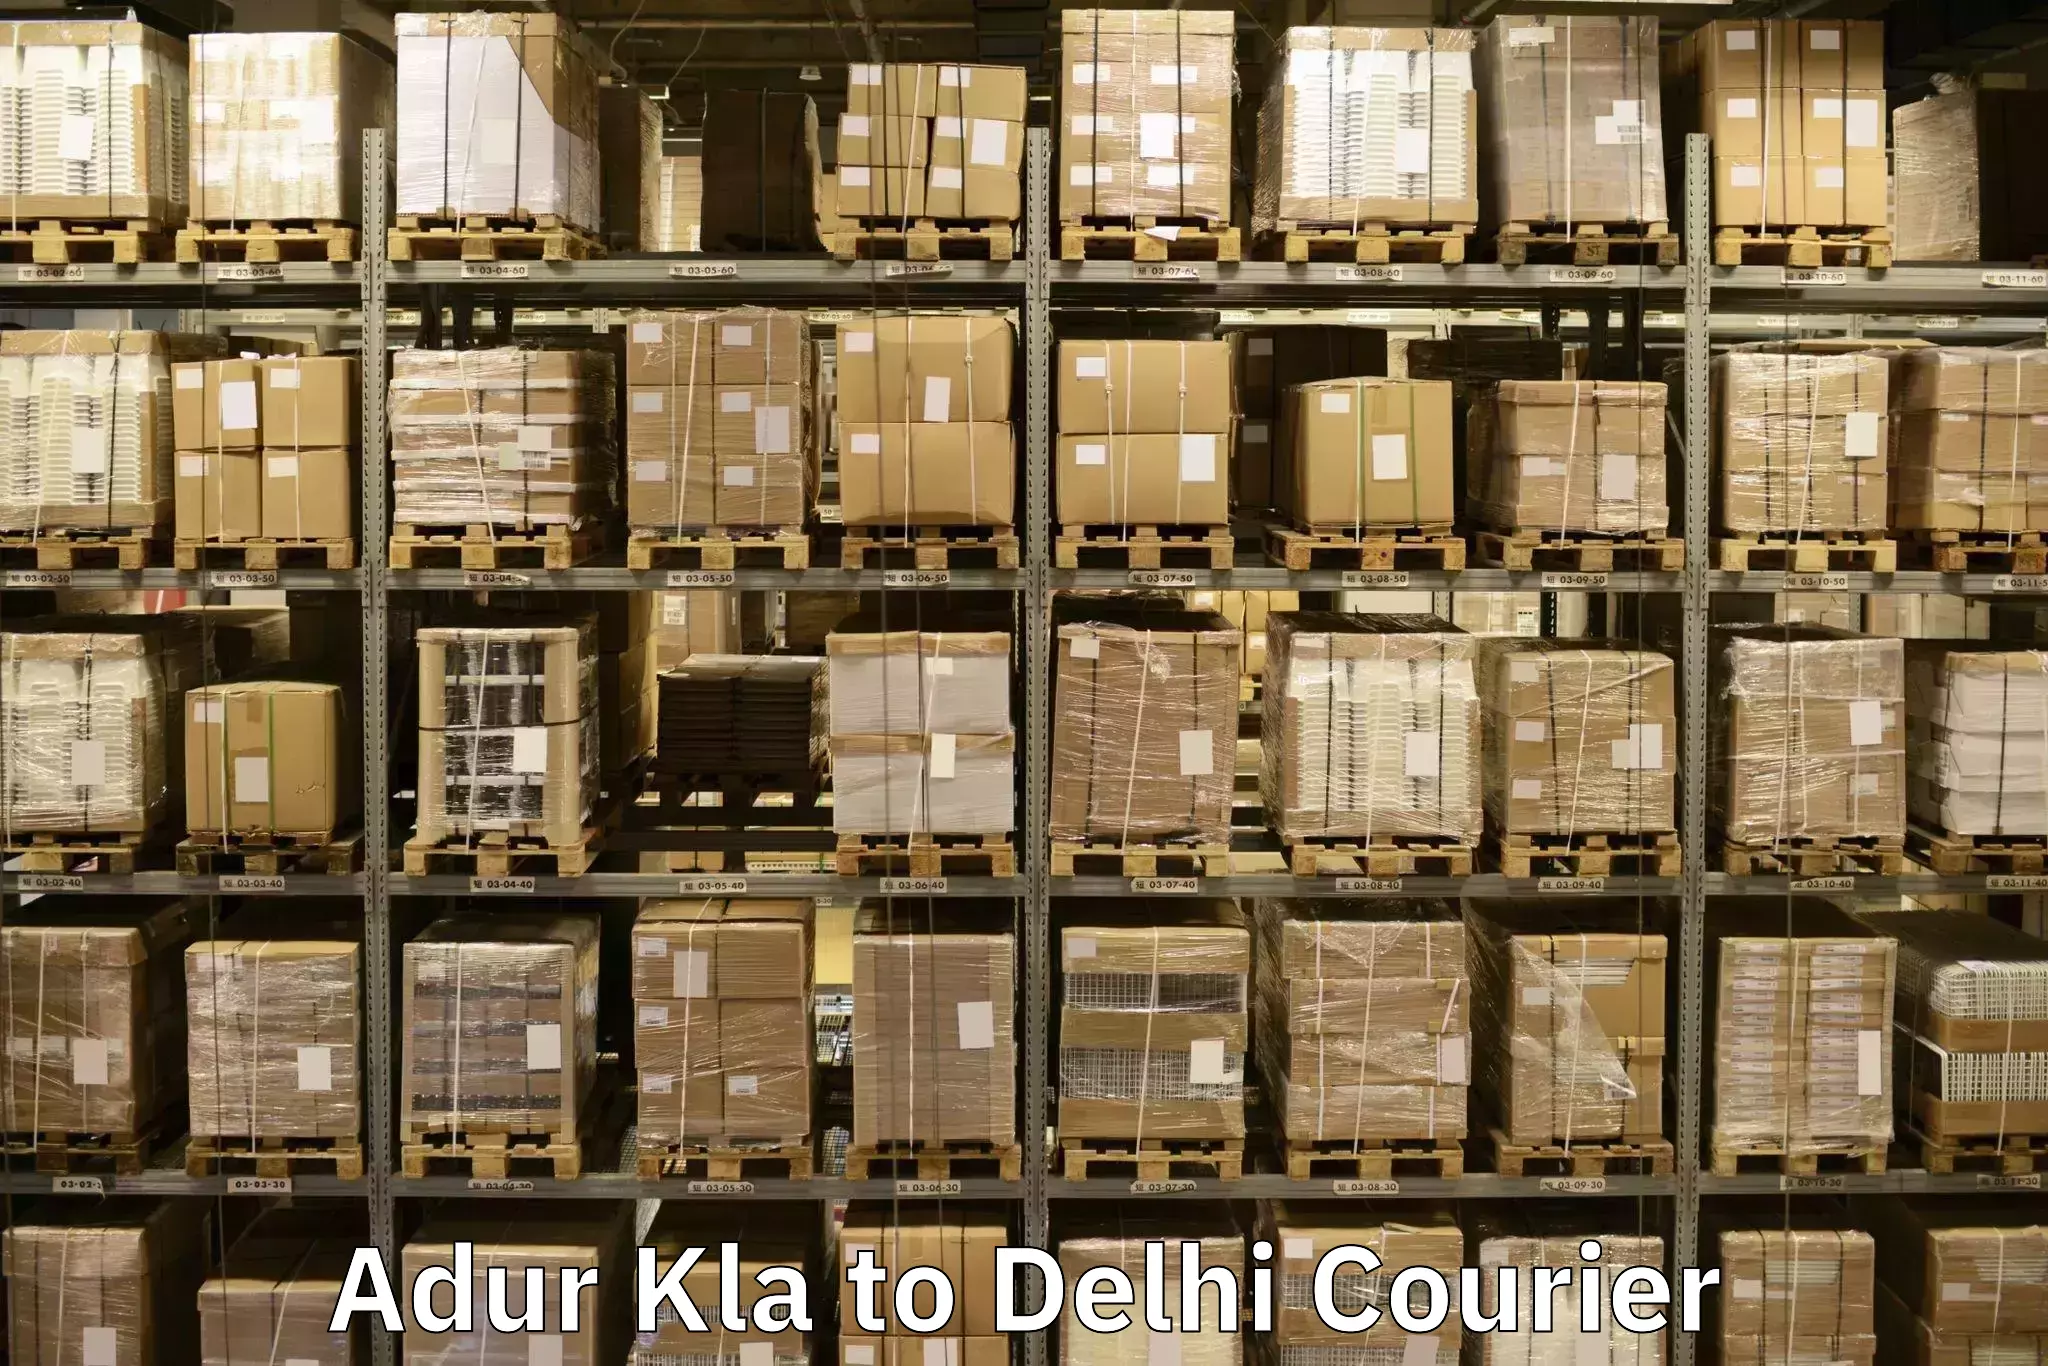 Efficient moving services Adur Kla to University of Delhi